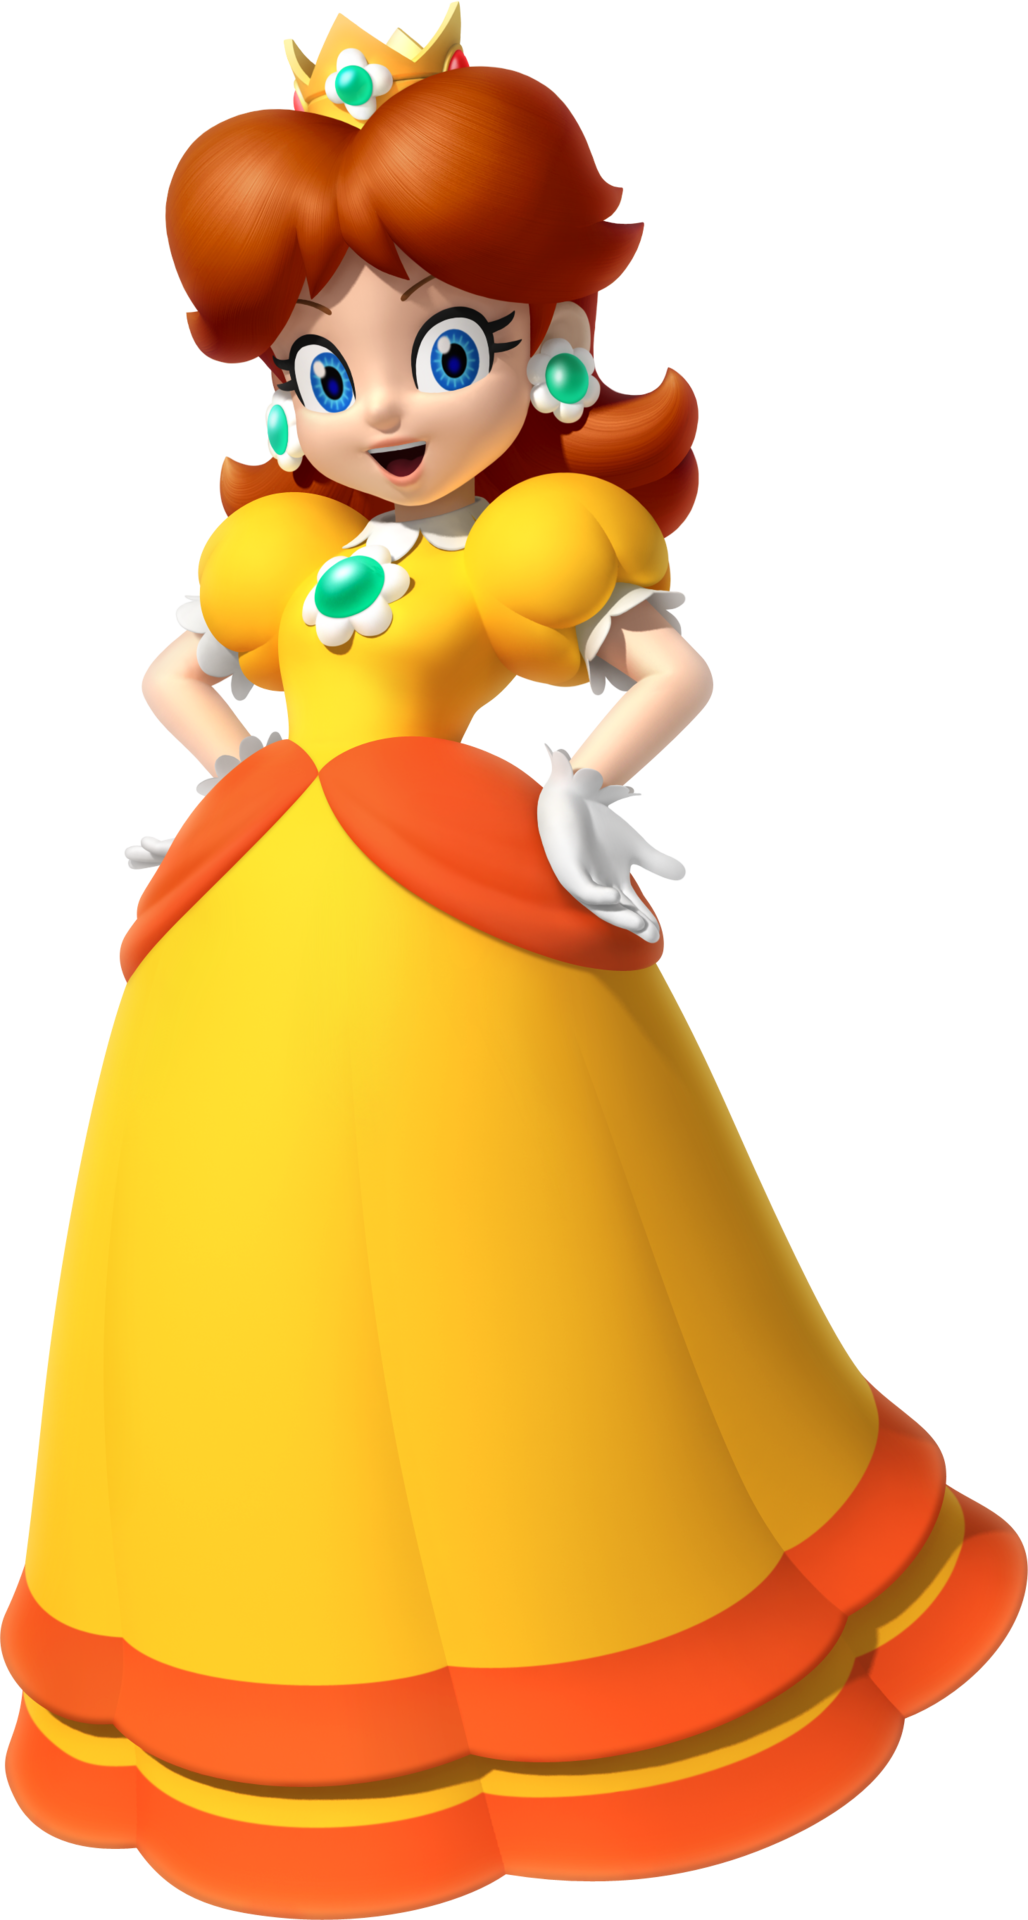 Mario Characters Princess Peach Daisy 1955